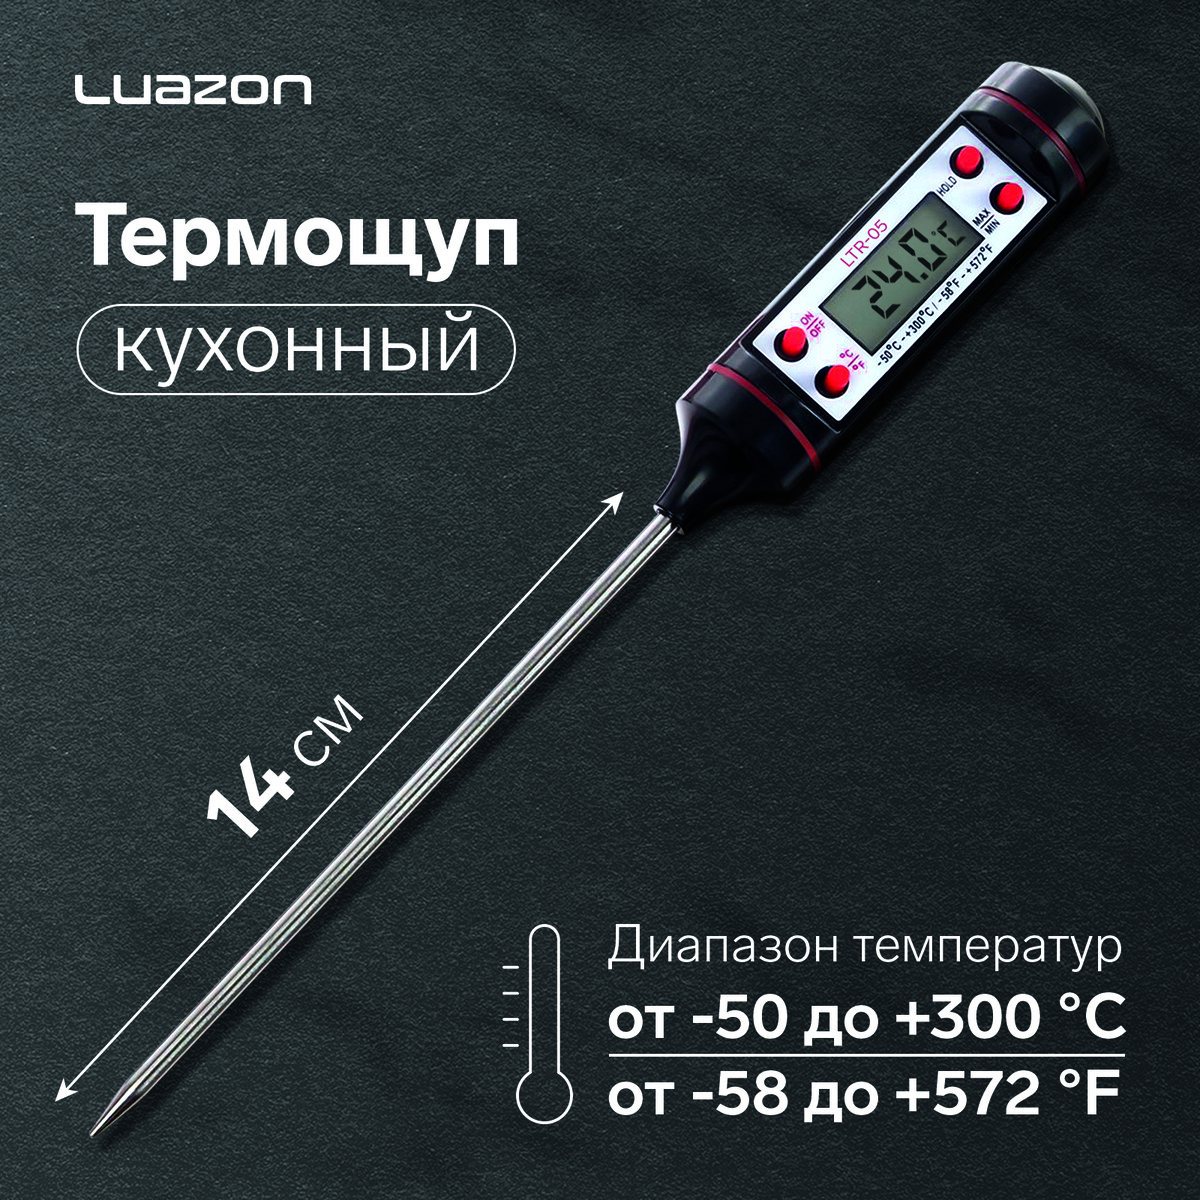 Термощуп кухонный luazon ltr-05, max 300 °c, от lr44, черный термощуп кухонный luazon ltr 01 максимальная температура 300 °c от lr44 белый